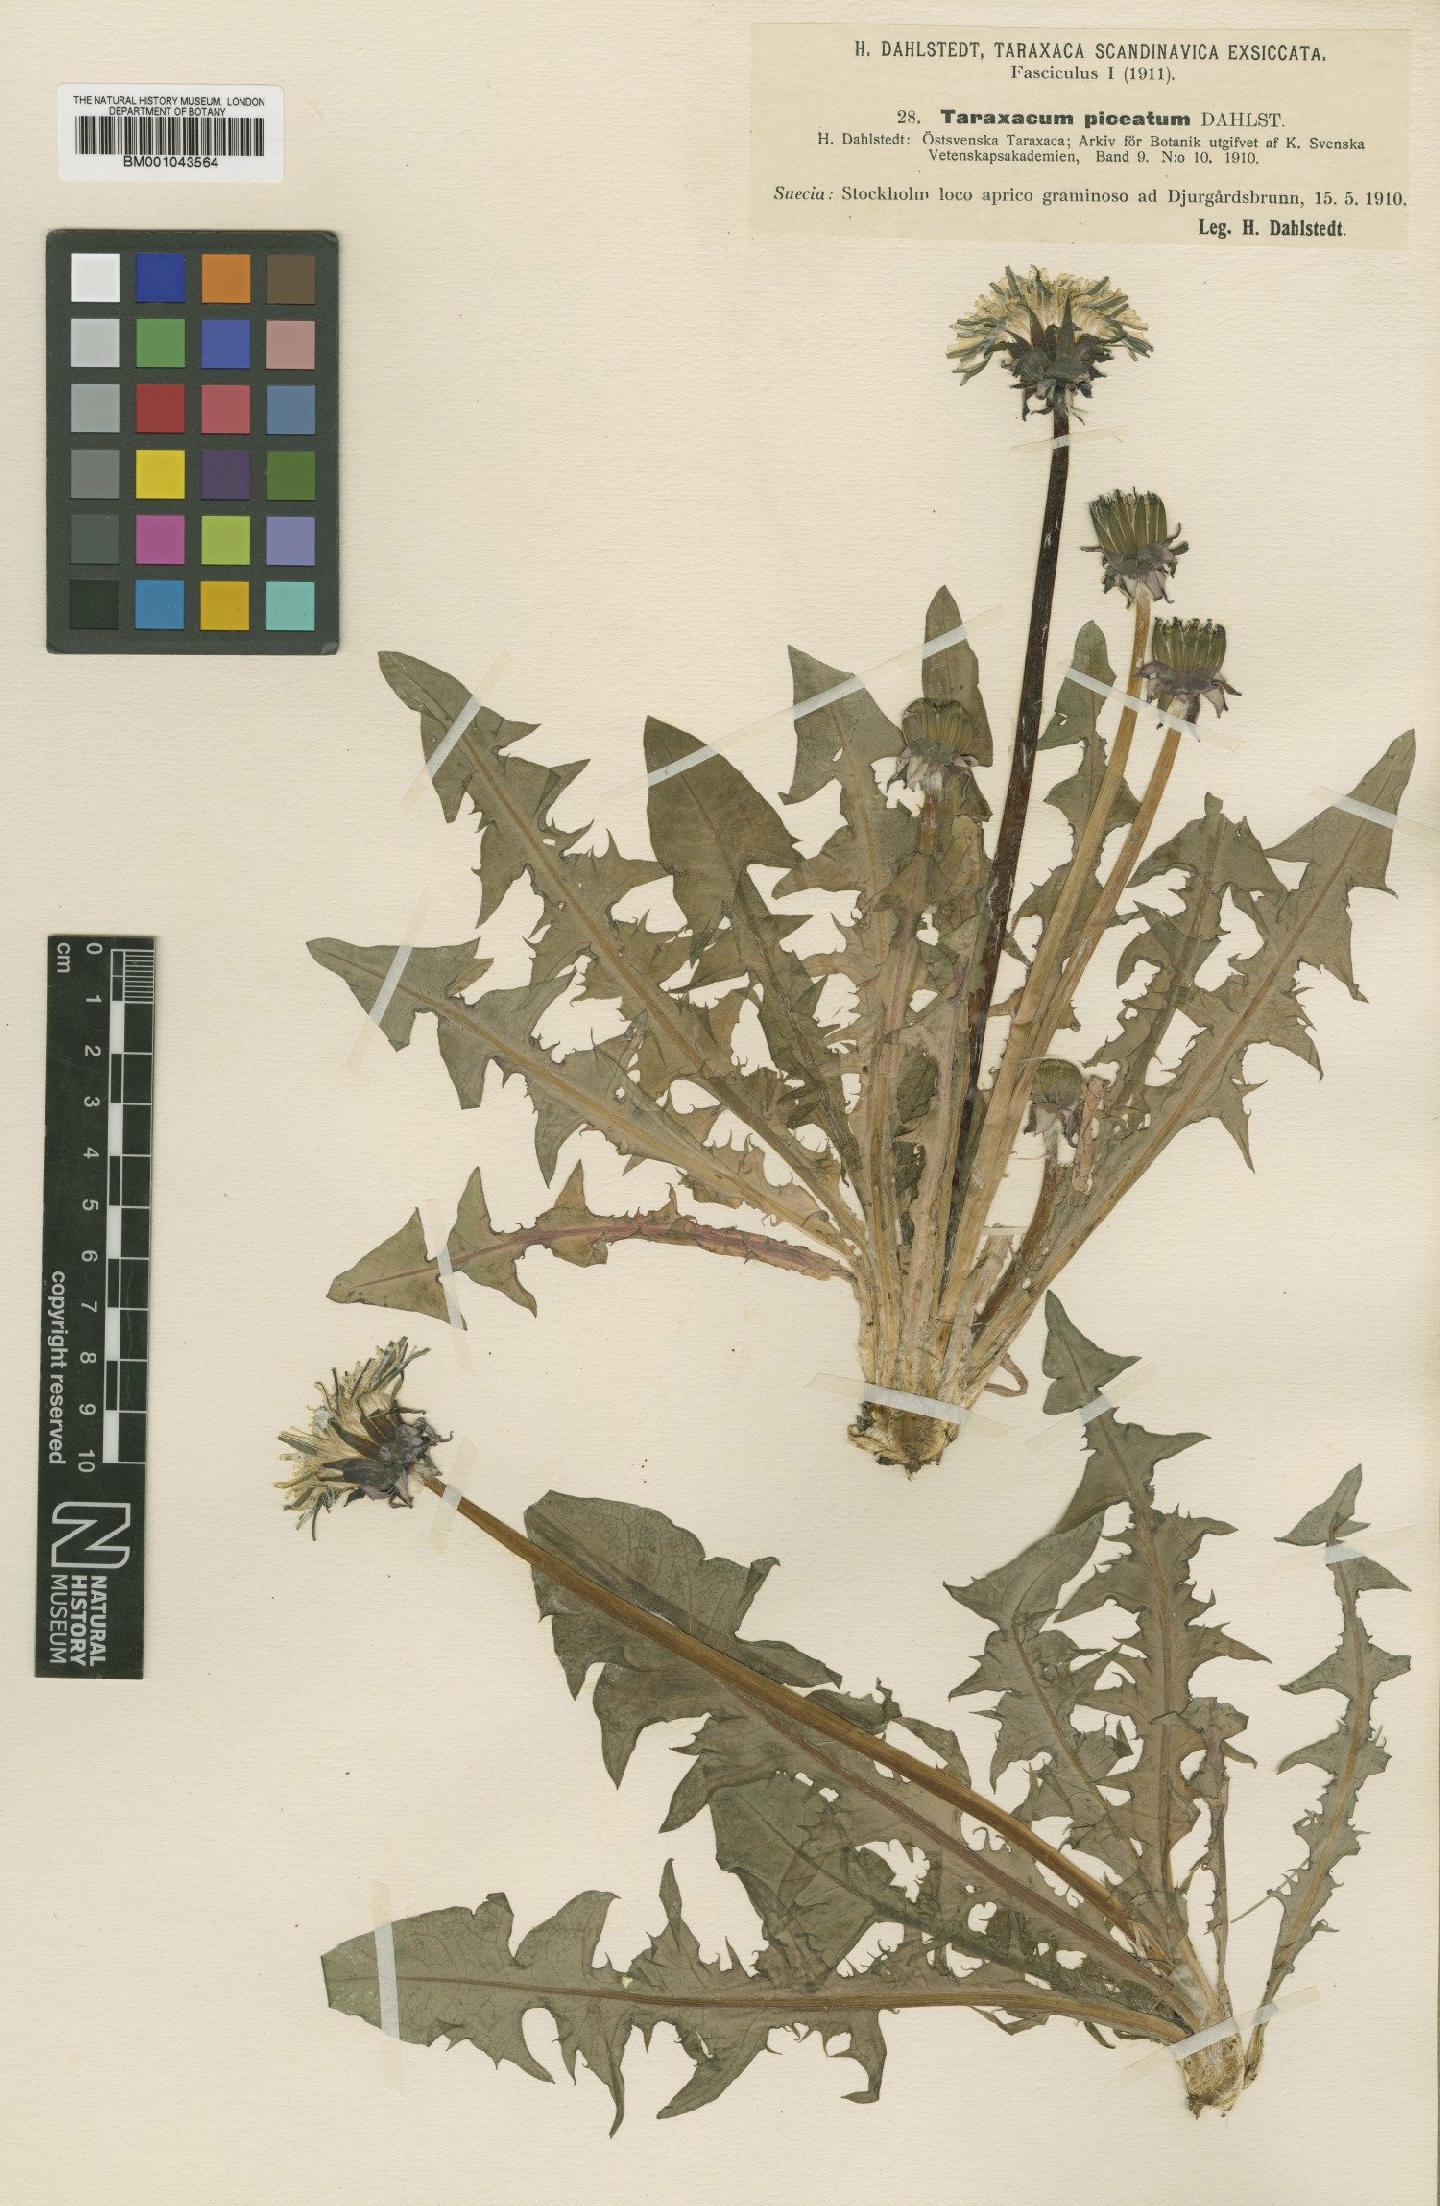 To NHMUK collection (Taraxacum piceatum Dahlst; Type; NHMUK:ecatalogue:2201135)